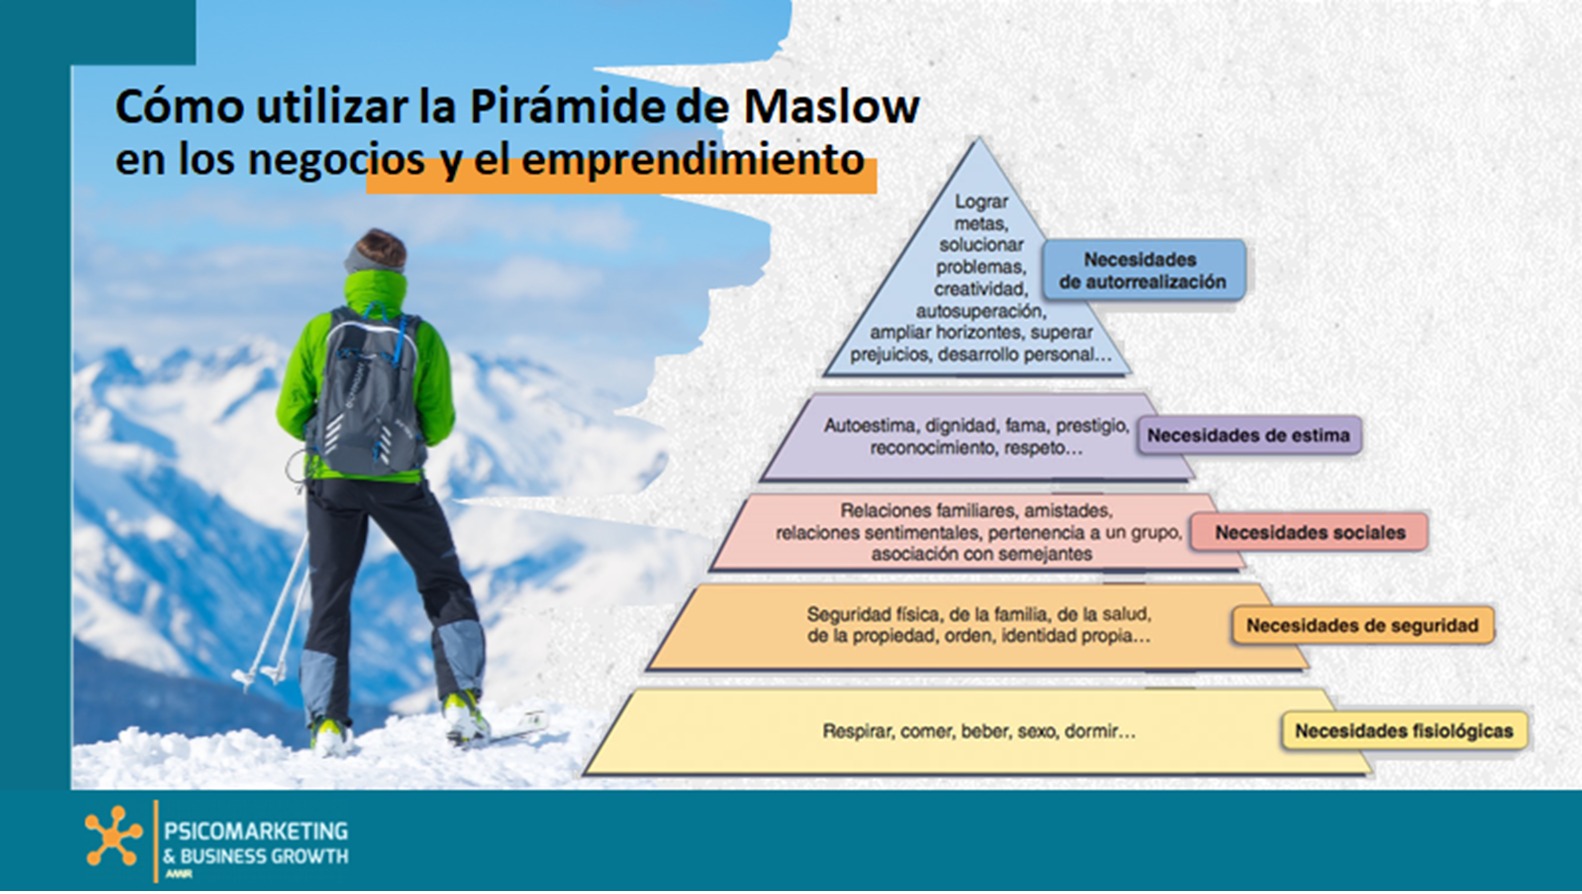 Cómo utilizar la Pirámide de Maslow en los negocios y el emprendimiento.